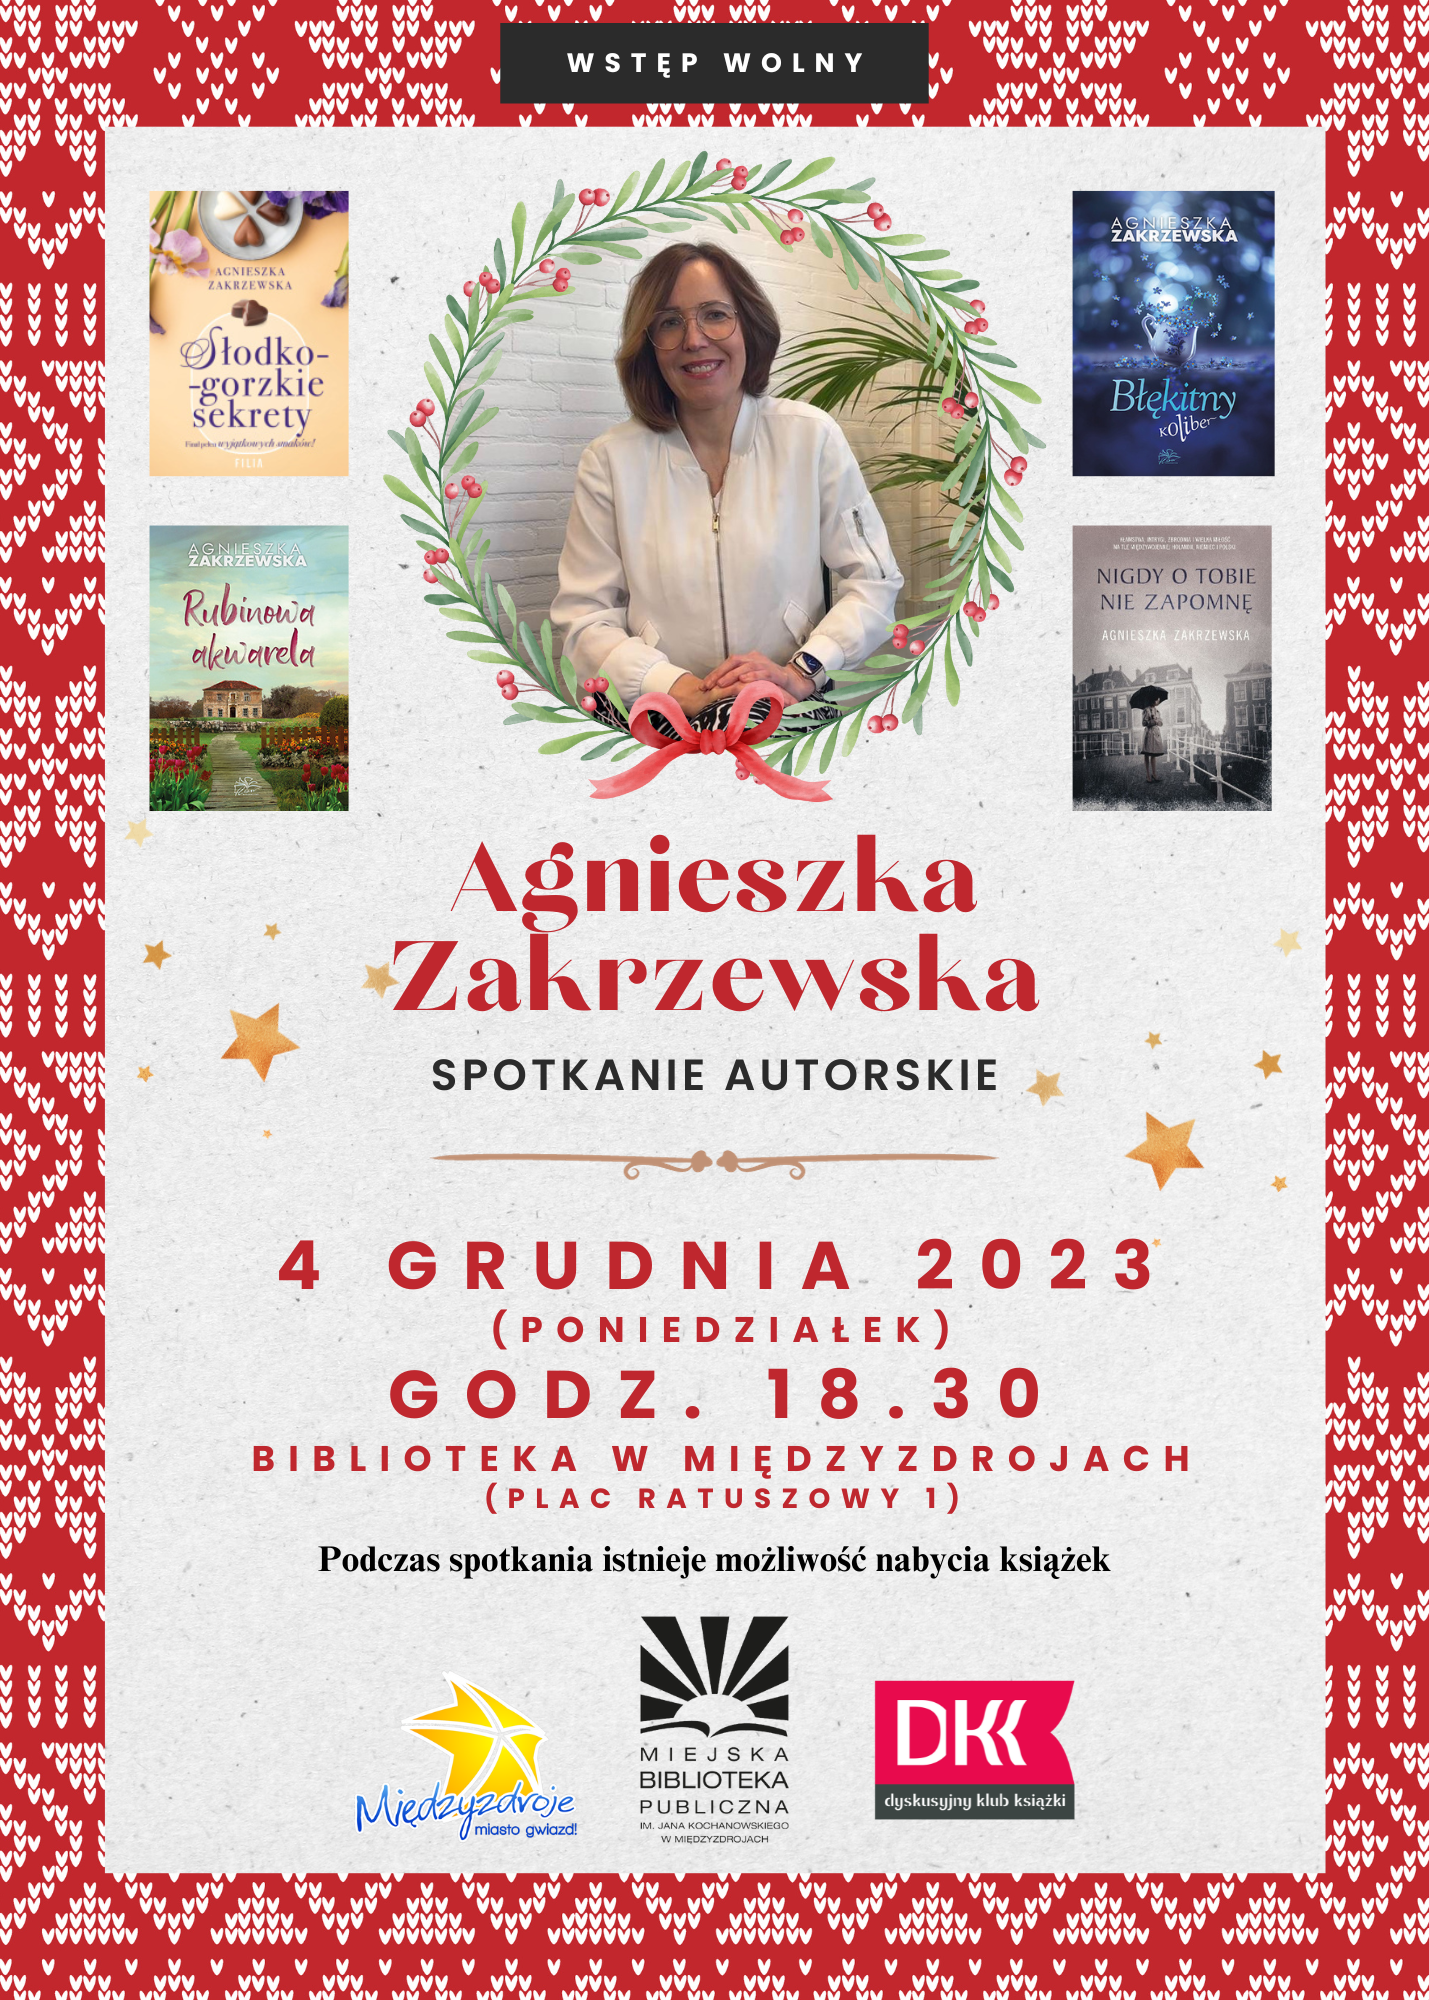 Spotkanie autorskie z Agnieszką Zakrzewską 4 grudnia 2023 r. - zapowiedź